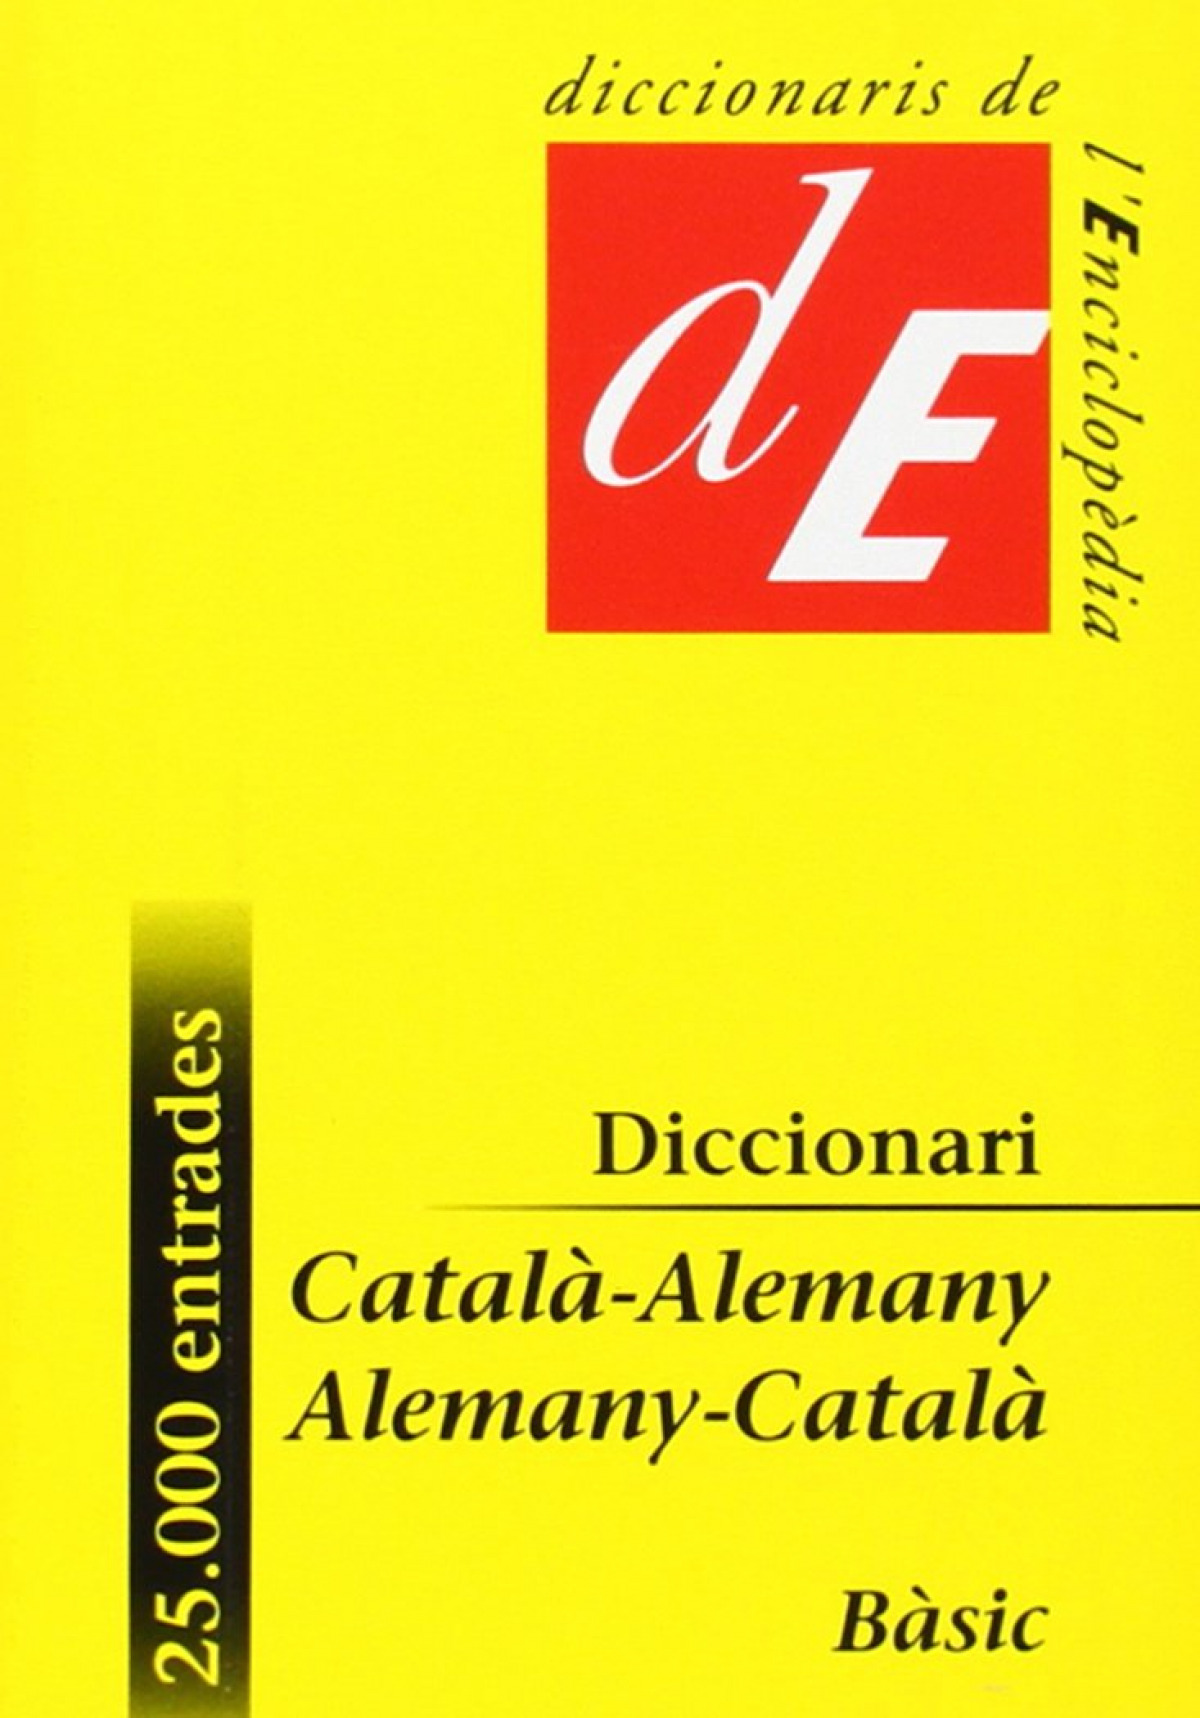 Diccionari Català-Alemany / Alemany-Català, bàsic - Diversos autors